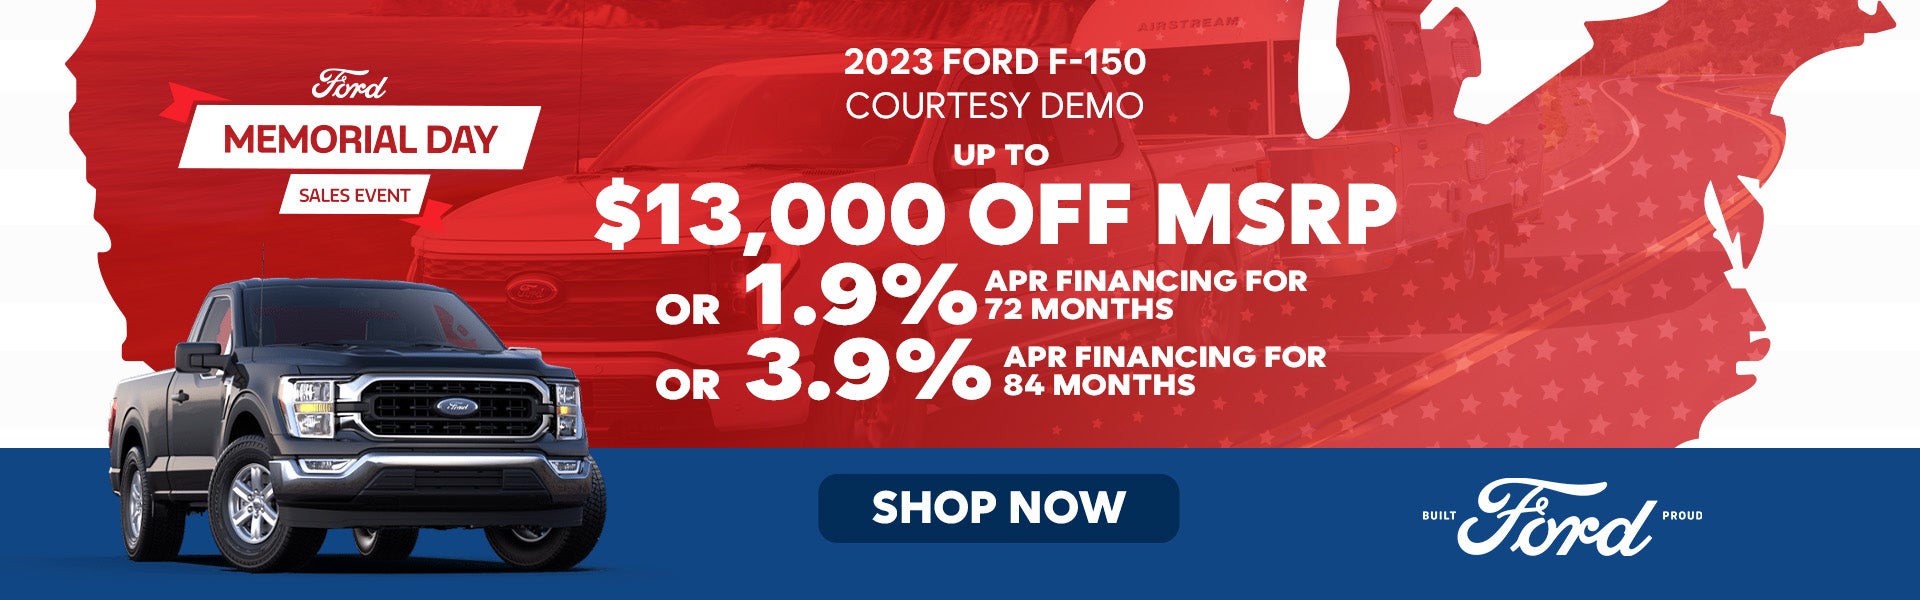 2023 Ford F-150 Courtesy Demo